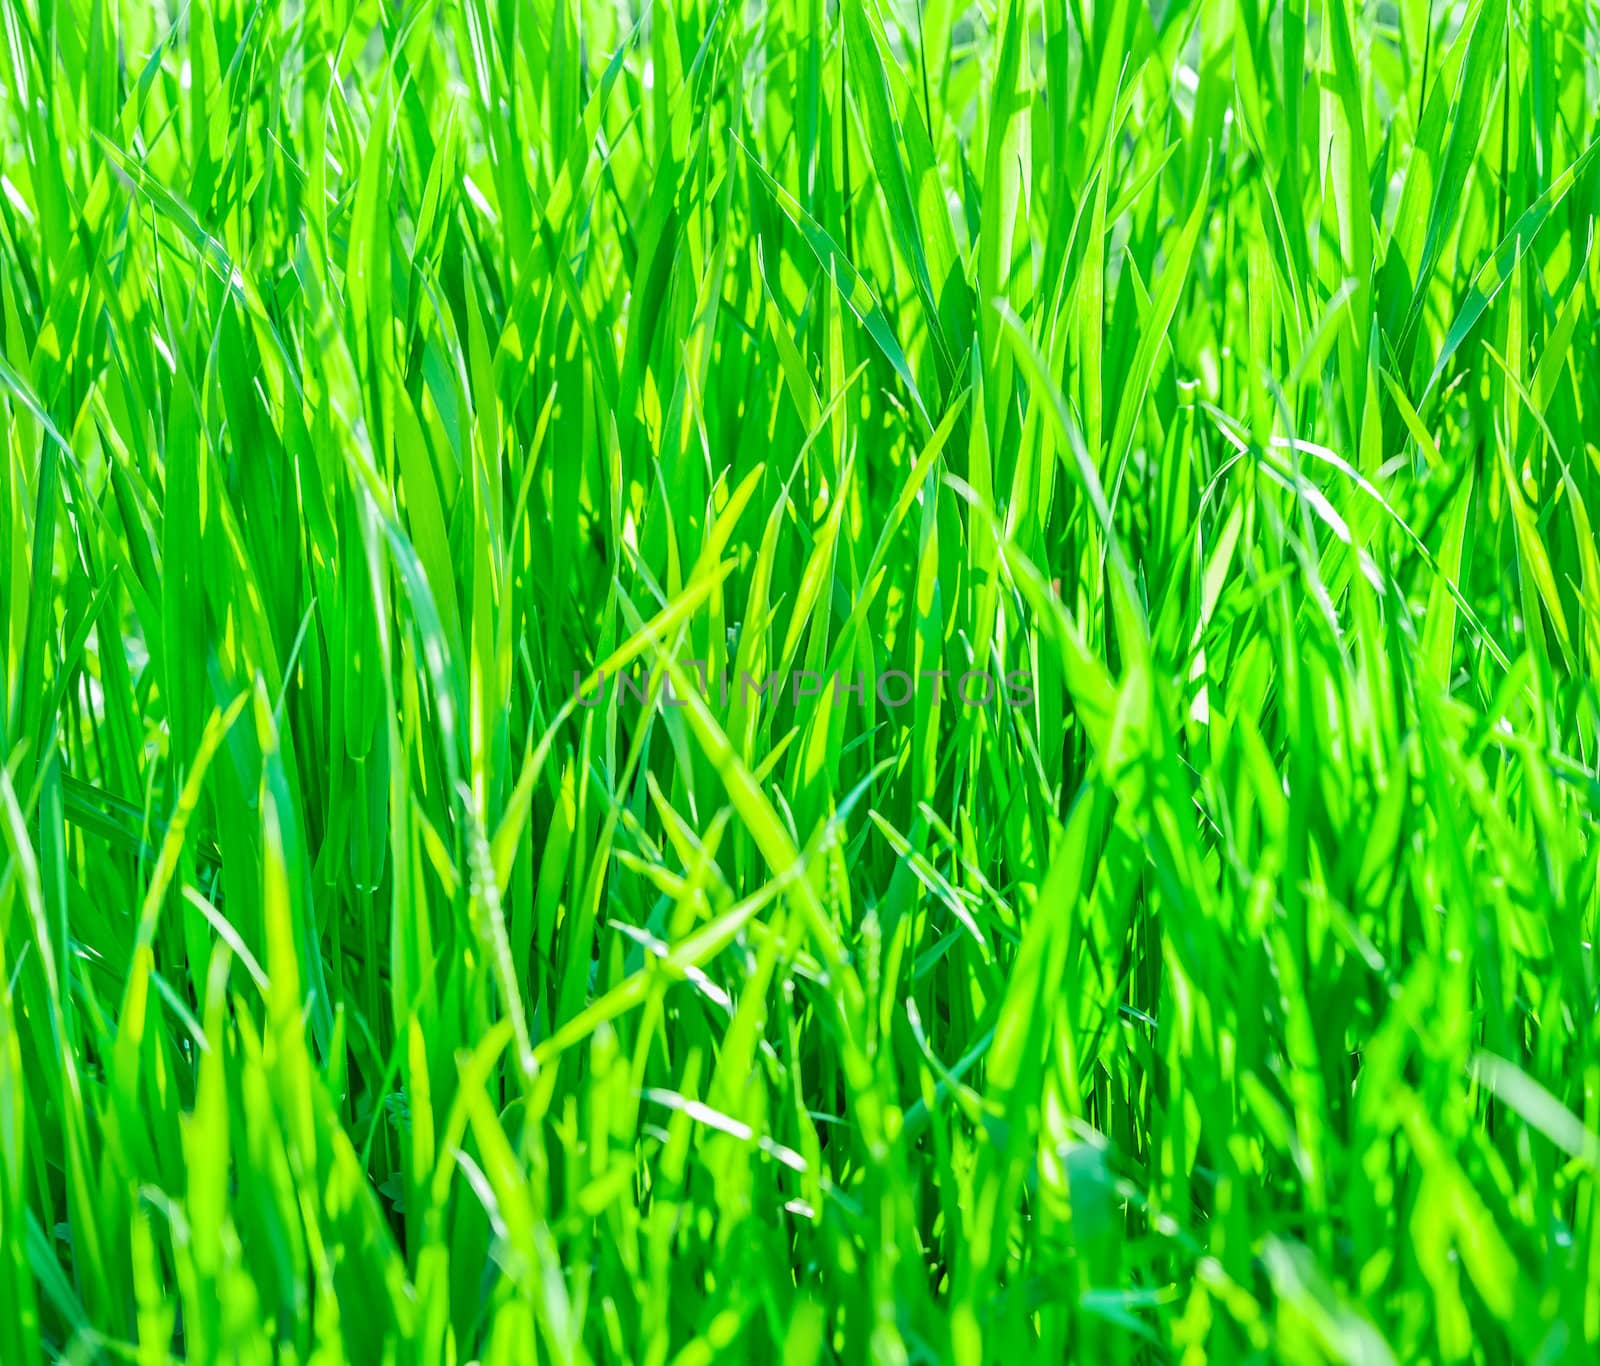 Texture of fresh green grass by zeffss